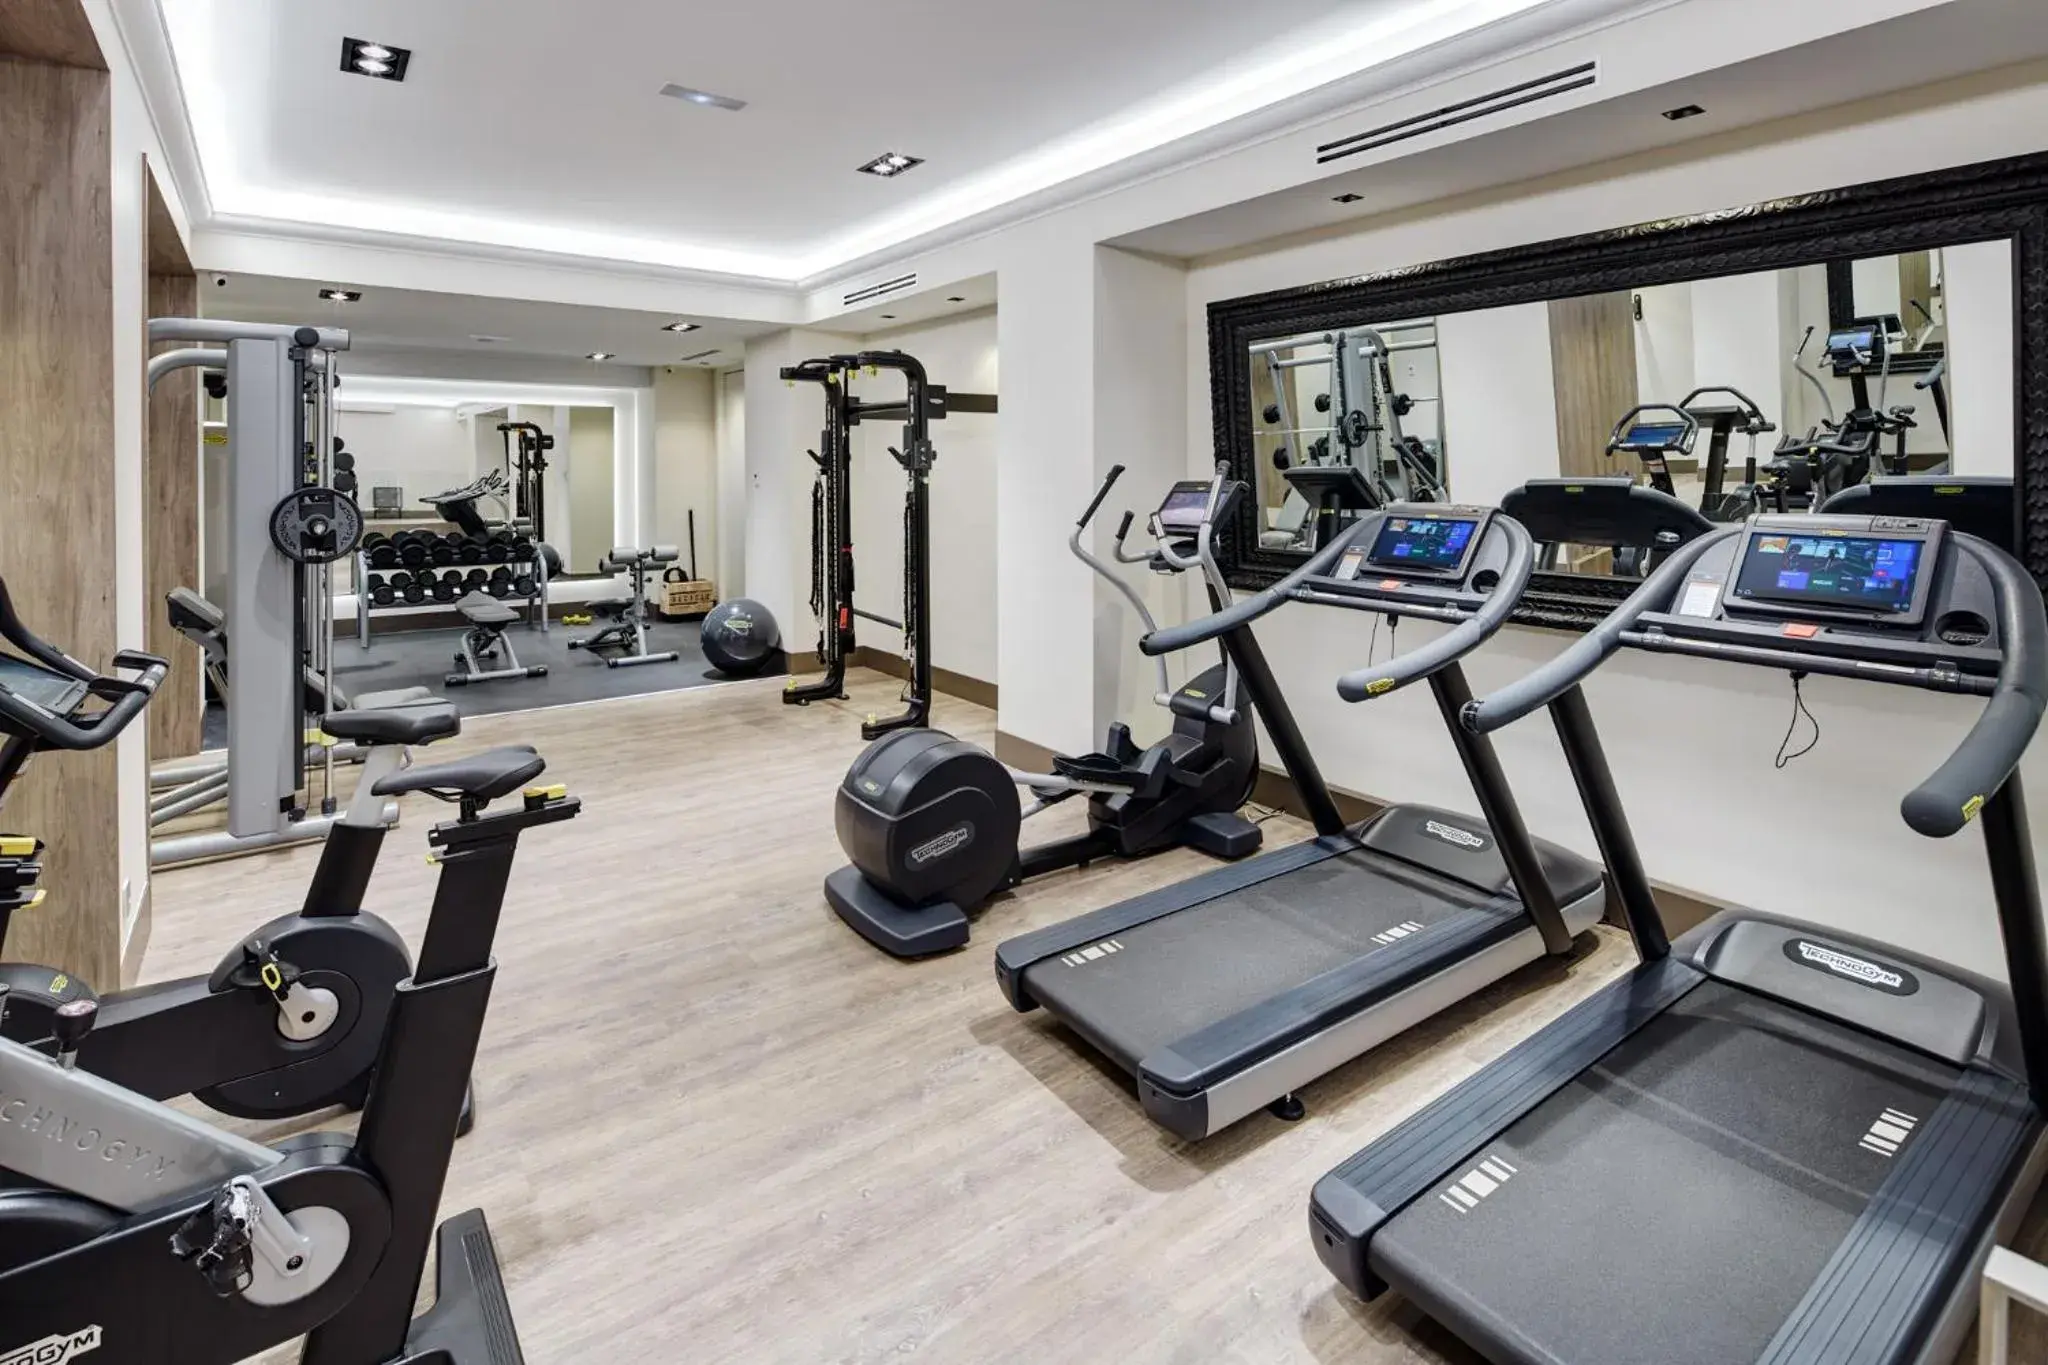 Fitness centre/facilities, Fitness Center/Facilities in Sercotel Gran Hotel Conde Duque